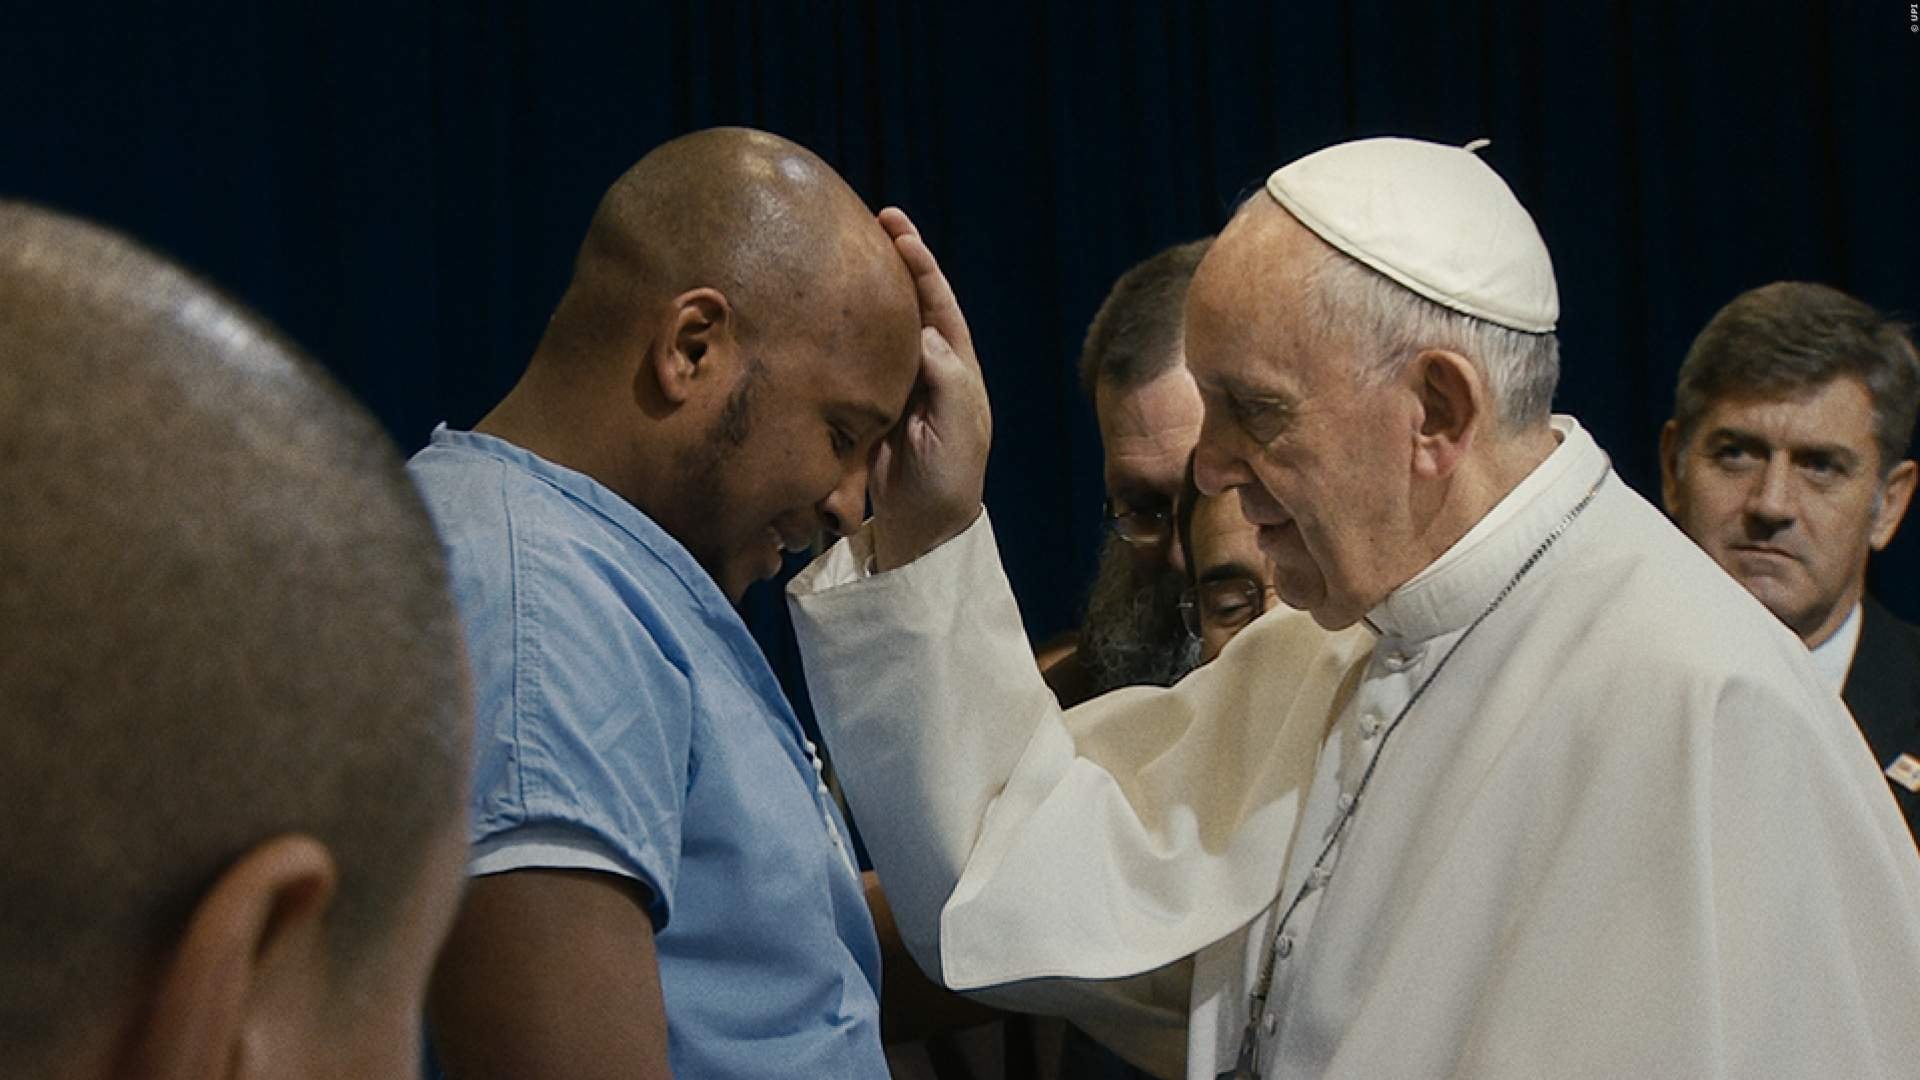 El Papa Francisco. Un Hombre de Palabra (2018)